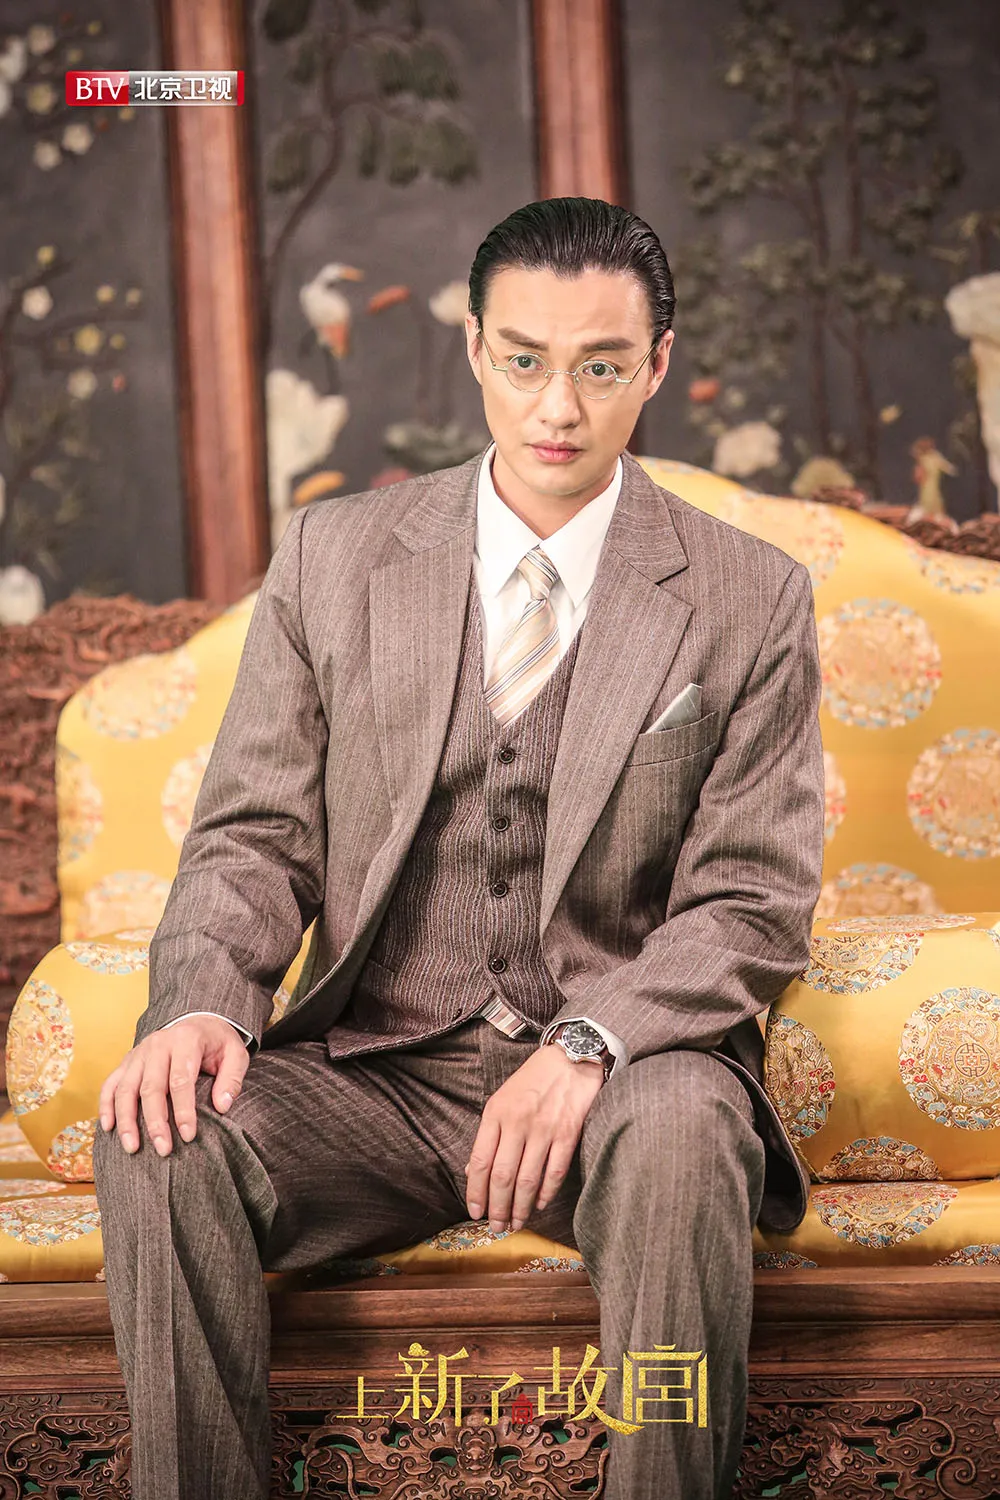 Yiwei Zhou as puyi. JPG